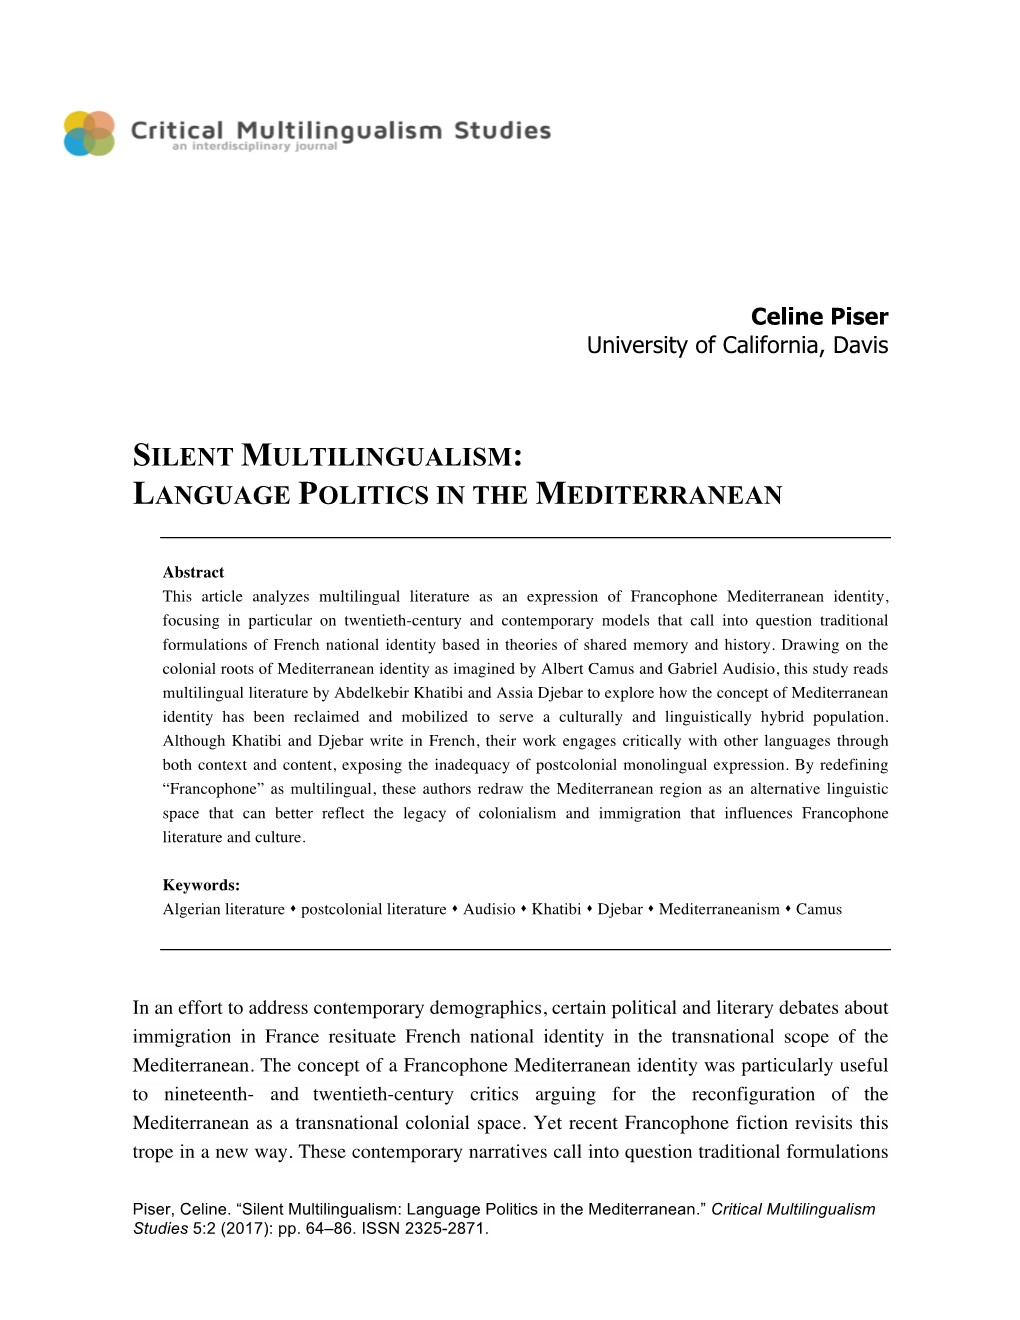 Silent Multilingualism: Language Politics in the Mediterranean